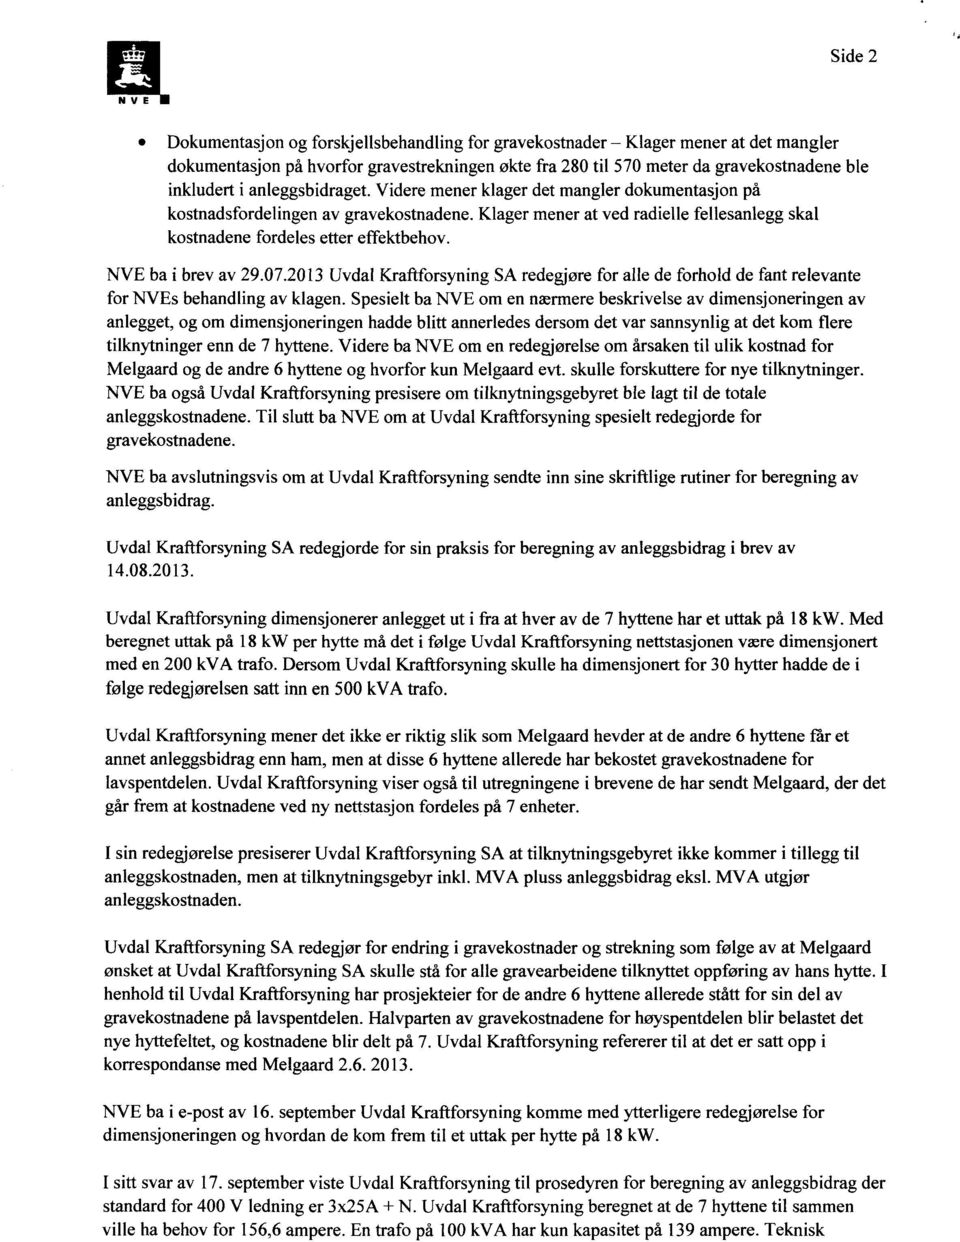 NVE ba i brev av 29.07.2013 Uvdal Kraftforsyning SA redegjøre for alle de forhold de fant relevante for NVEs behandling av klagen.